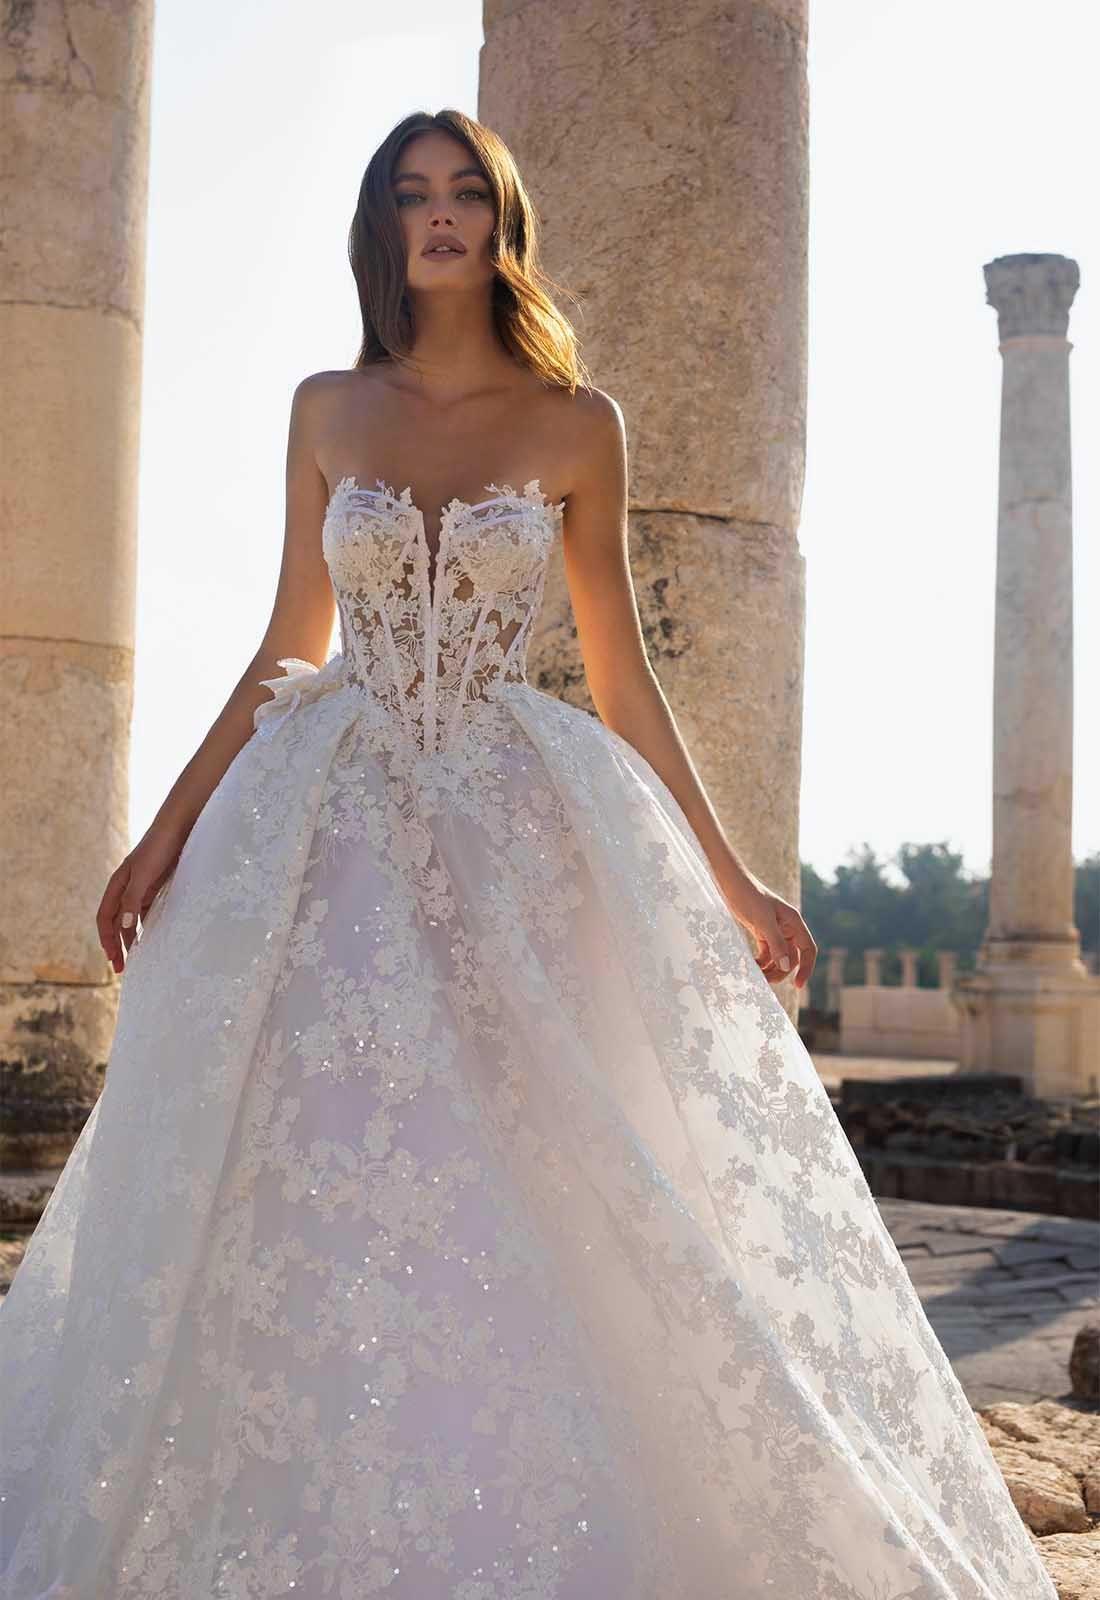 14 tendencias en vestidos de novia 2020: ¡la moda que viene! - bodas.com.mx